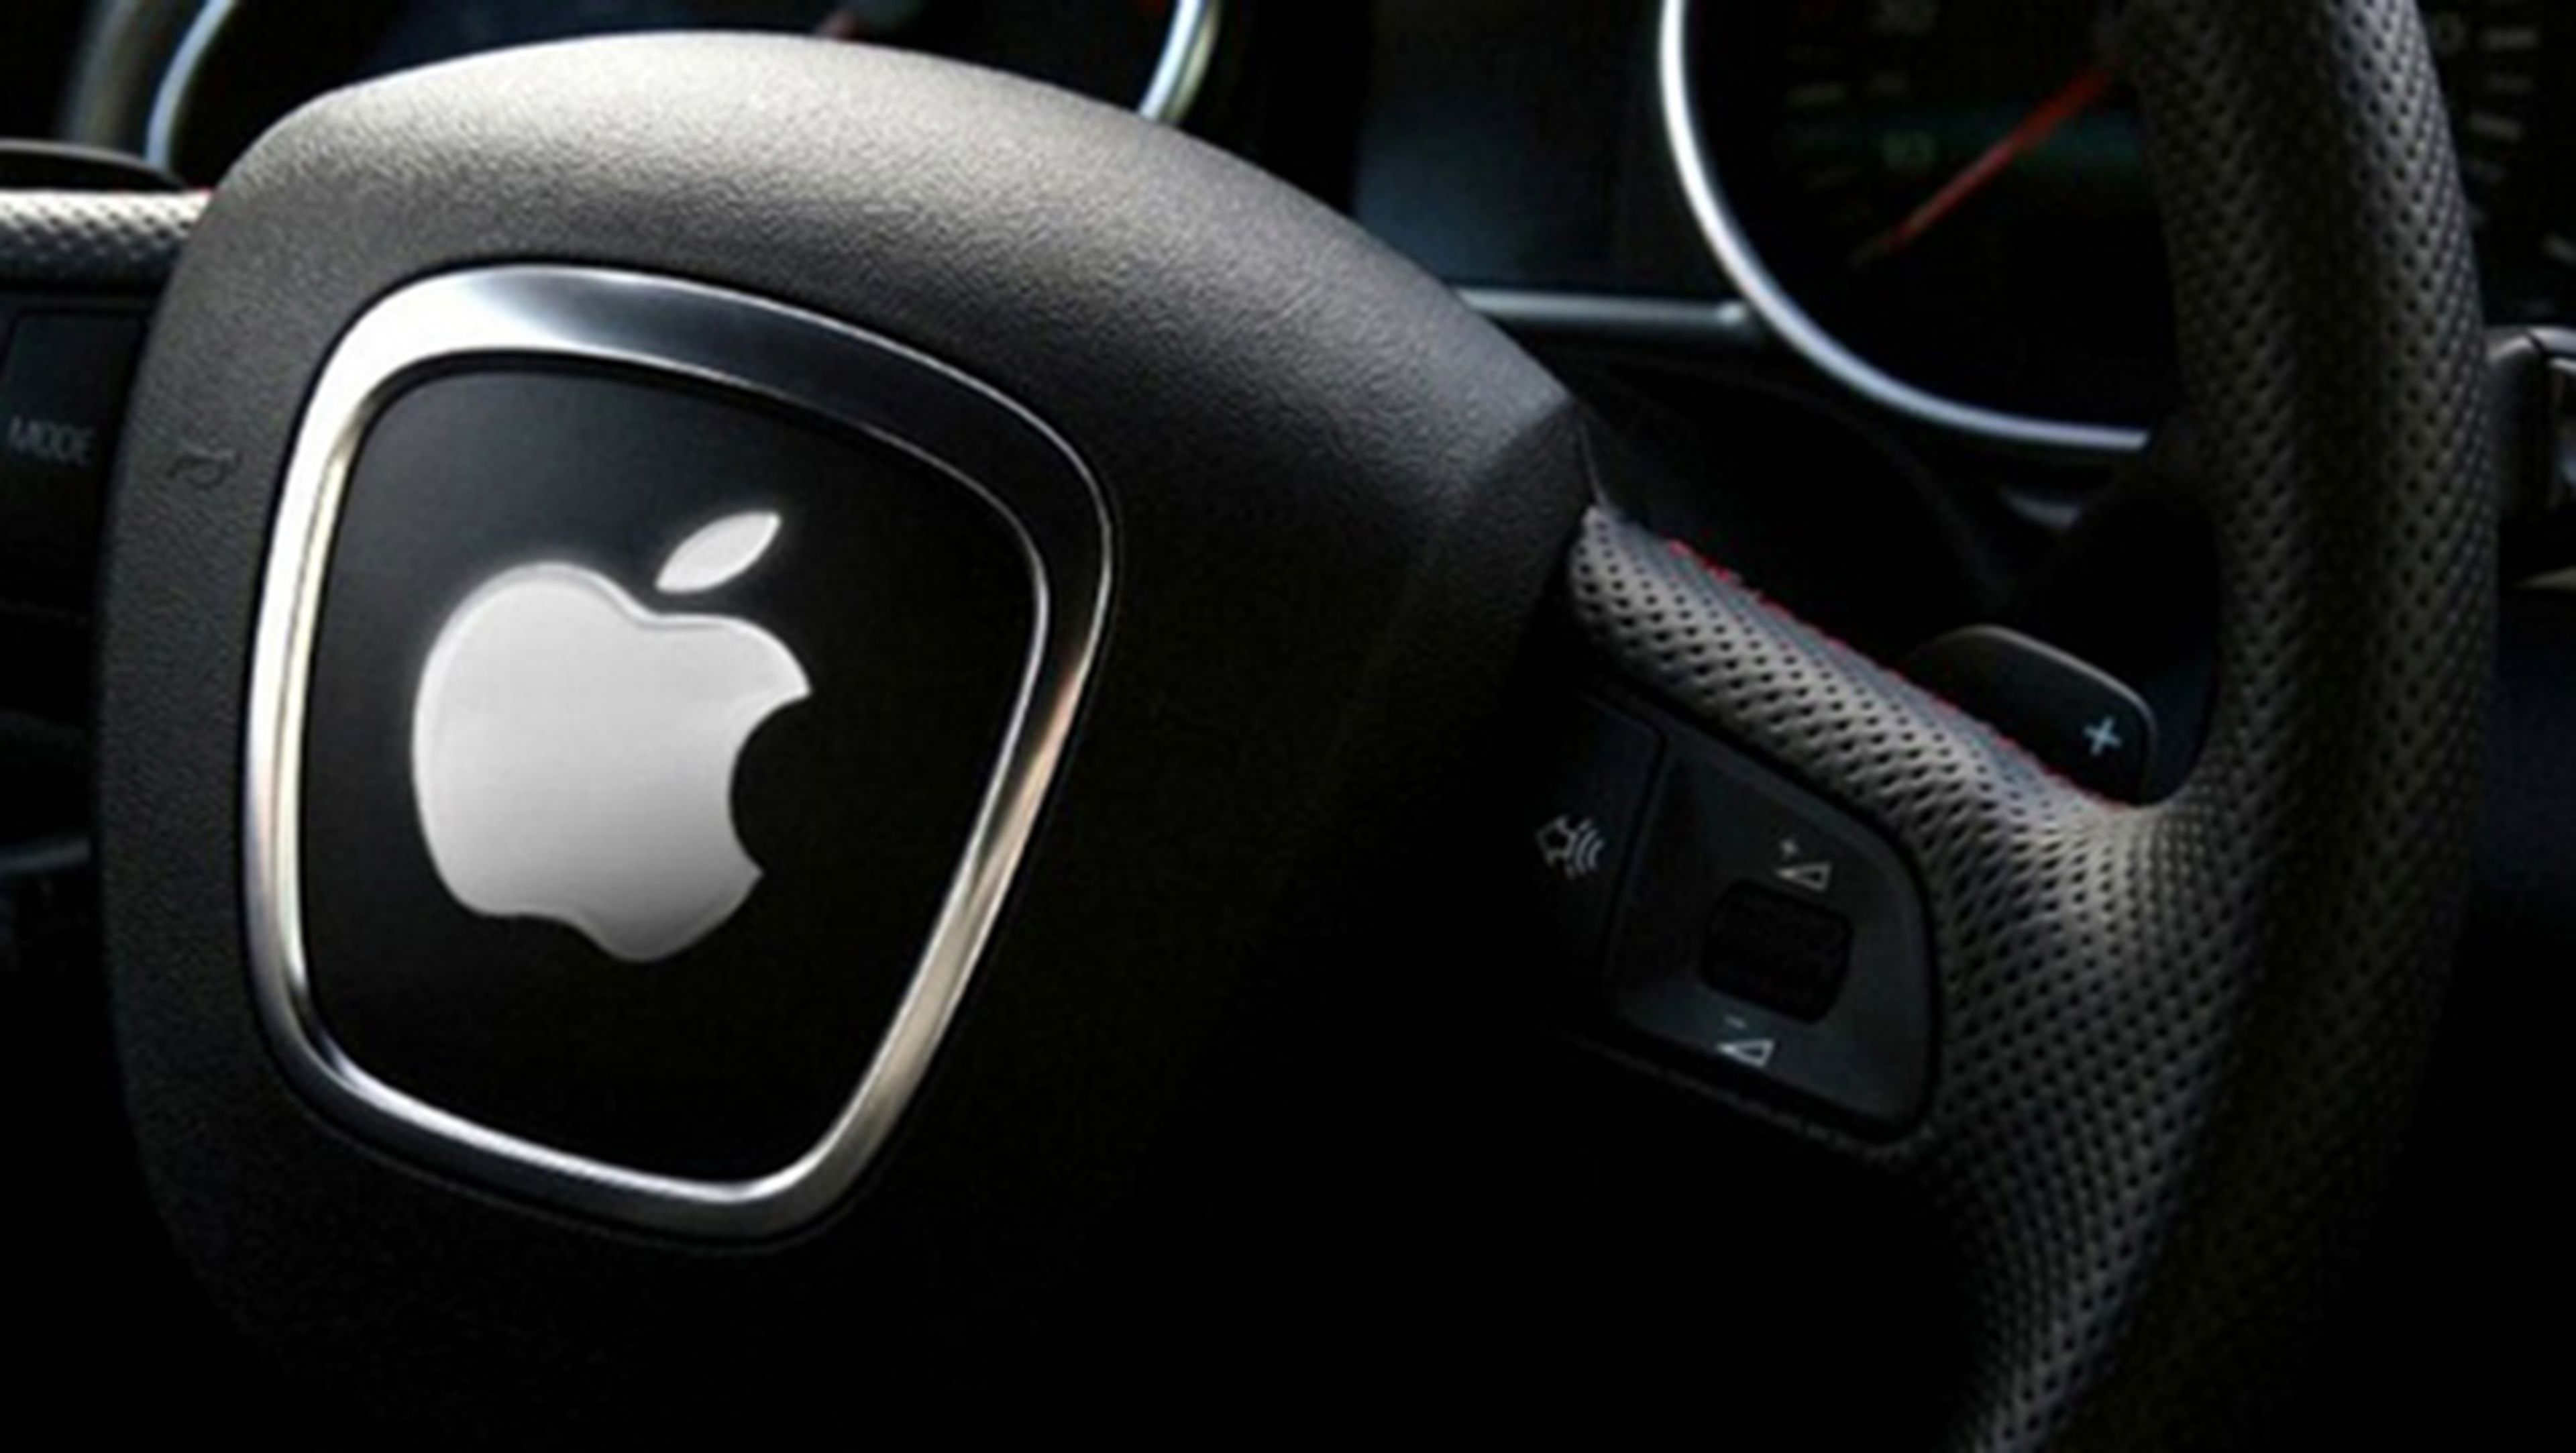 Apple parece trabajar en un coche autónomo